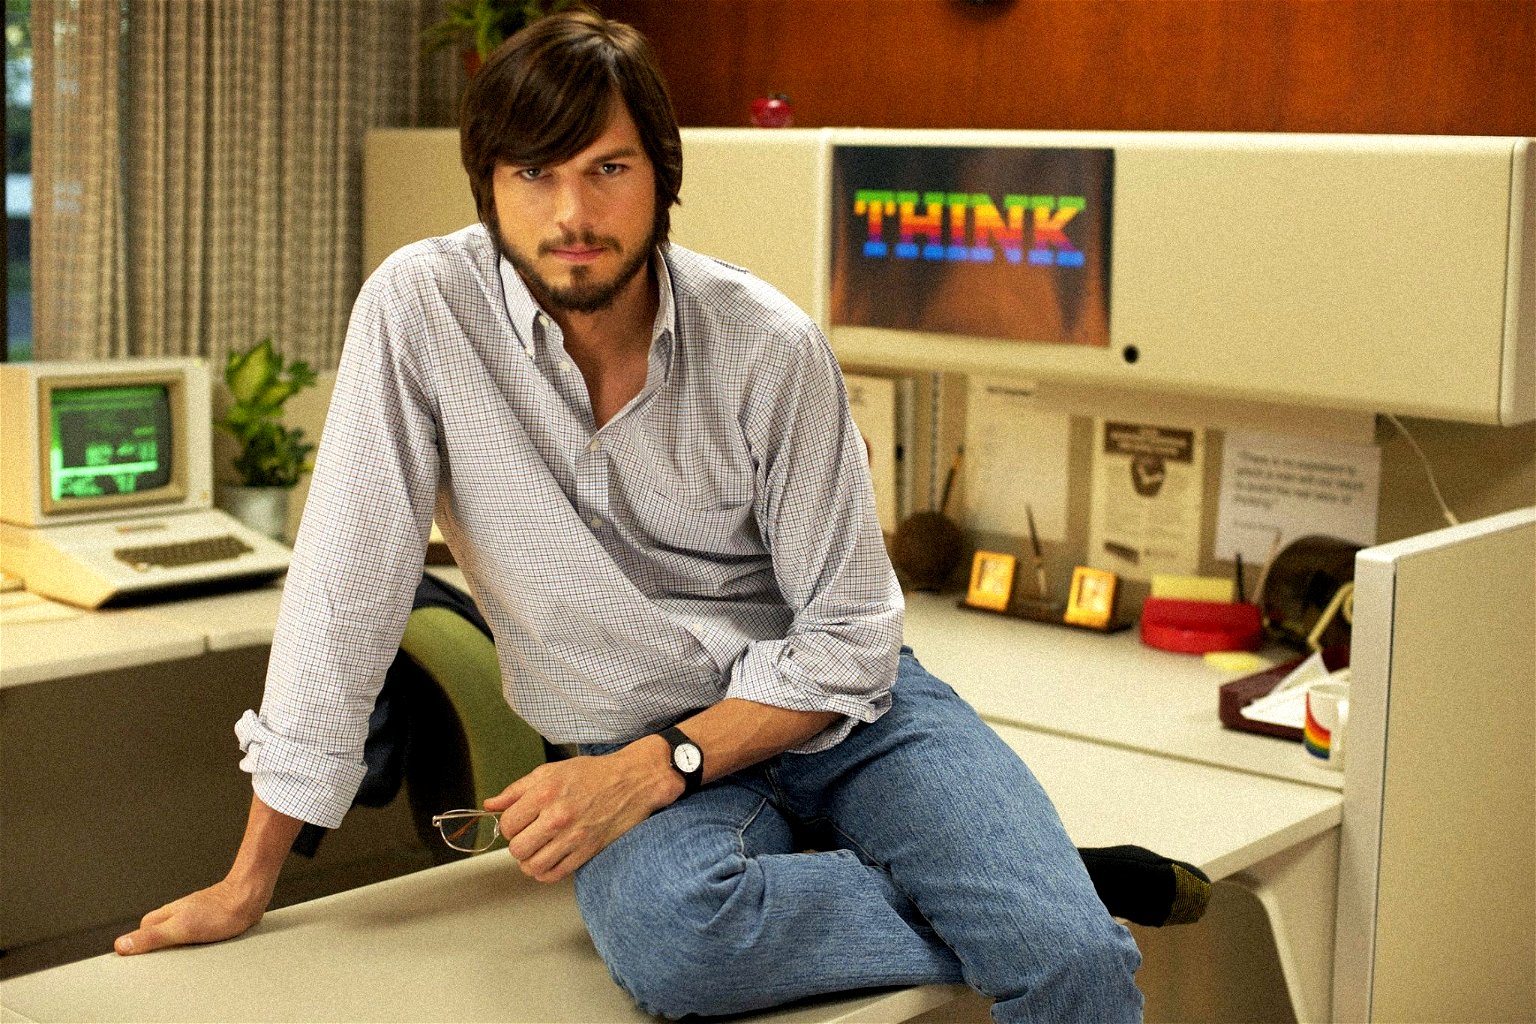 Steve Job’s Biopic Trailer Starring Ashton Kutcher Released [VIDEO]